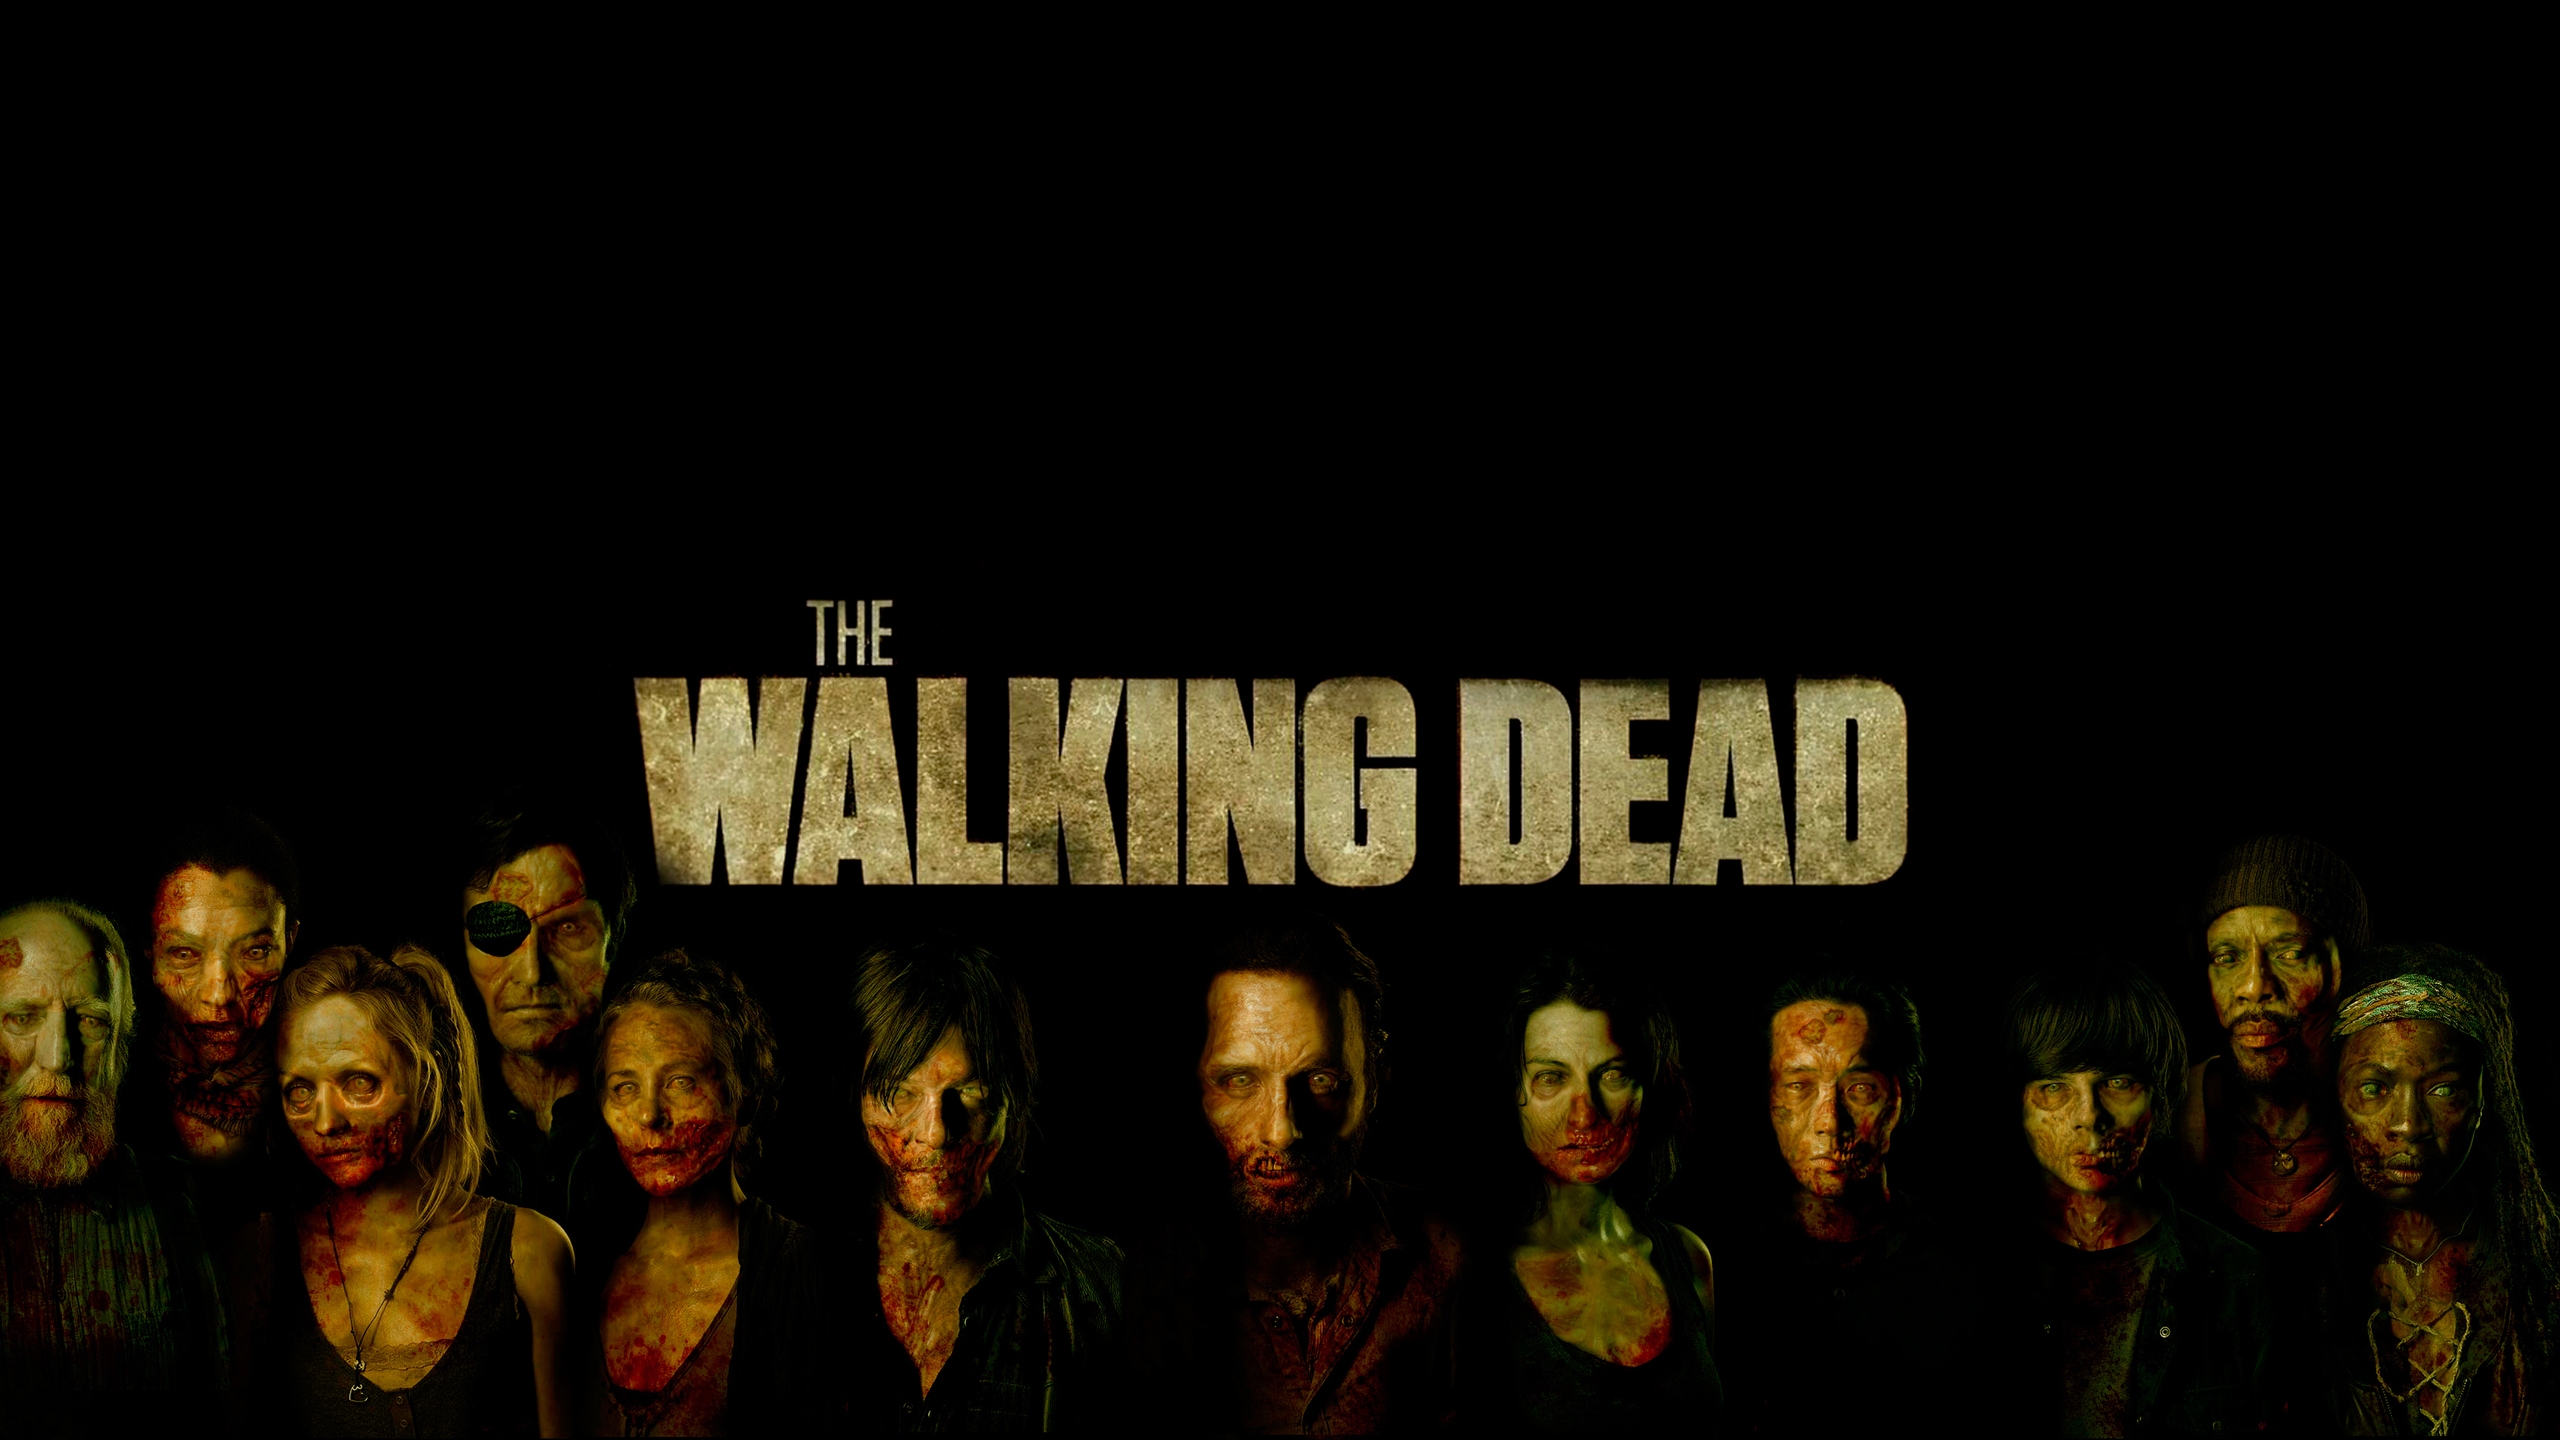 The Walking Dead Poster Art  for 2560x1440 HDTV resolution